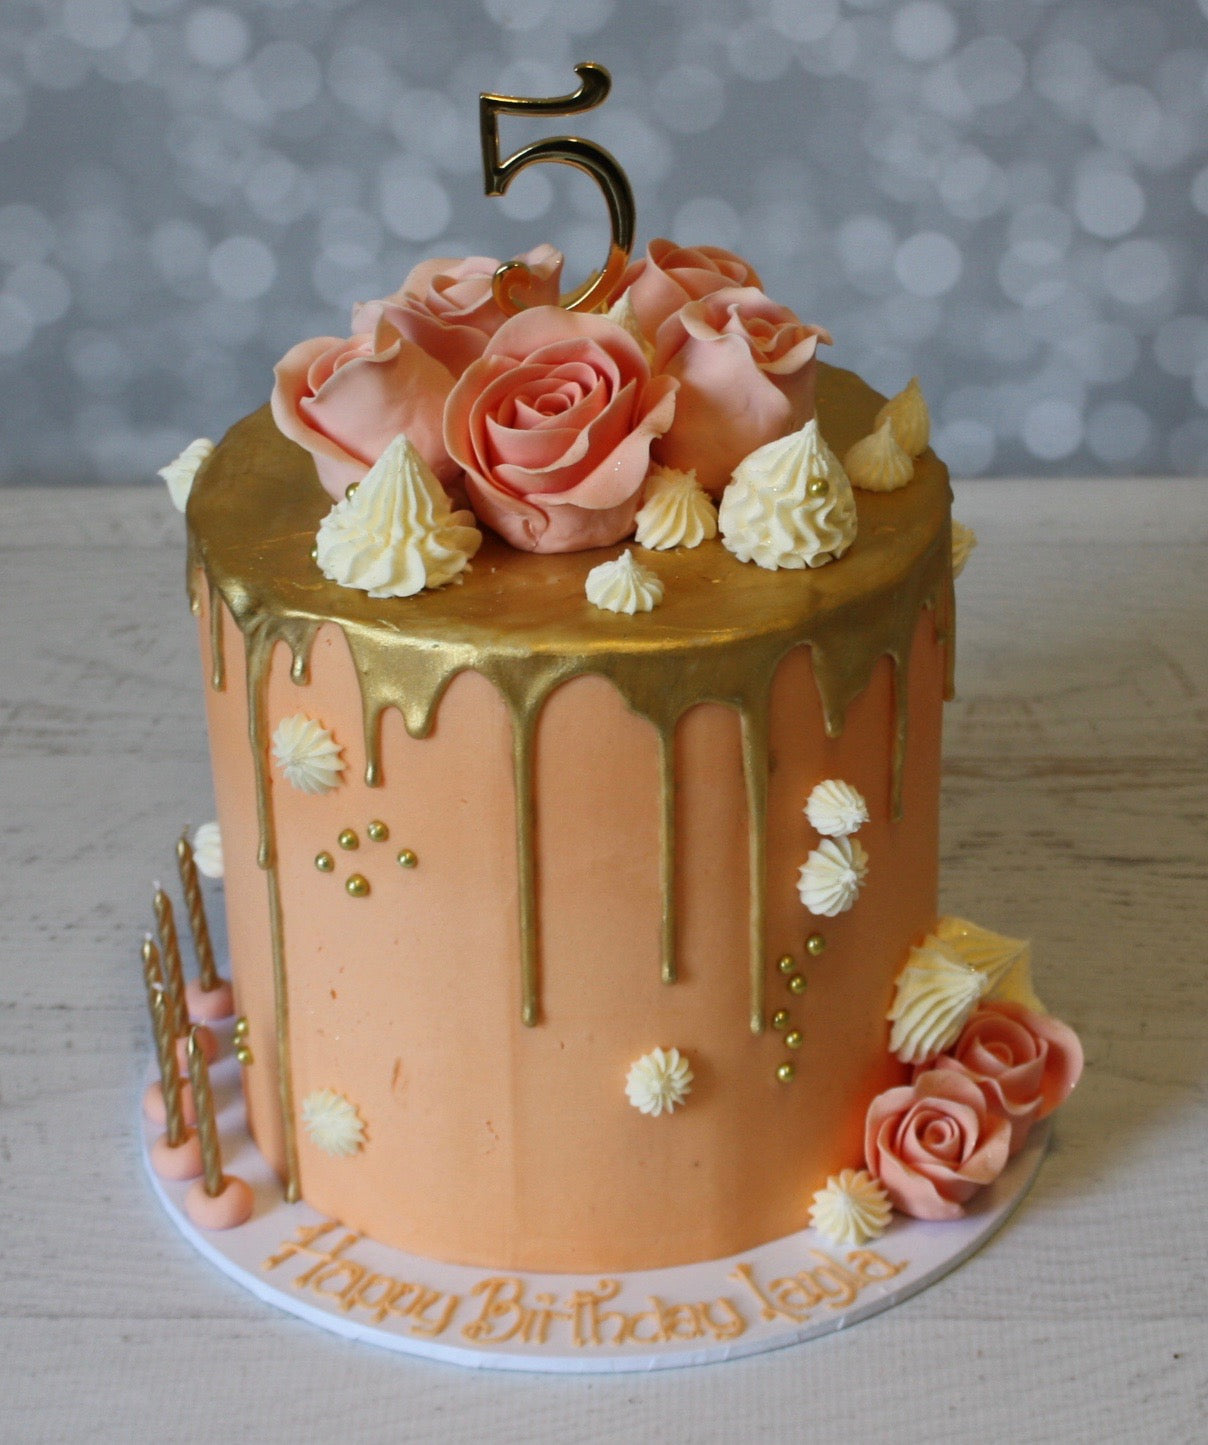 Birthday Cakes for Girl Online | Best Cake Designs for Girls